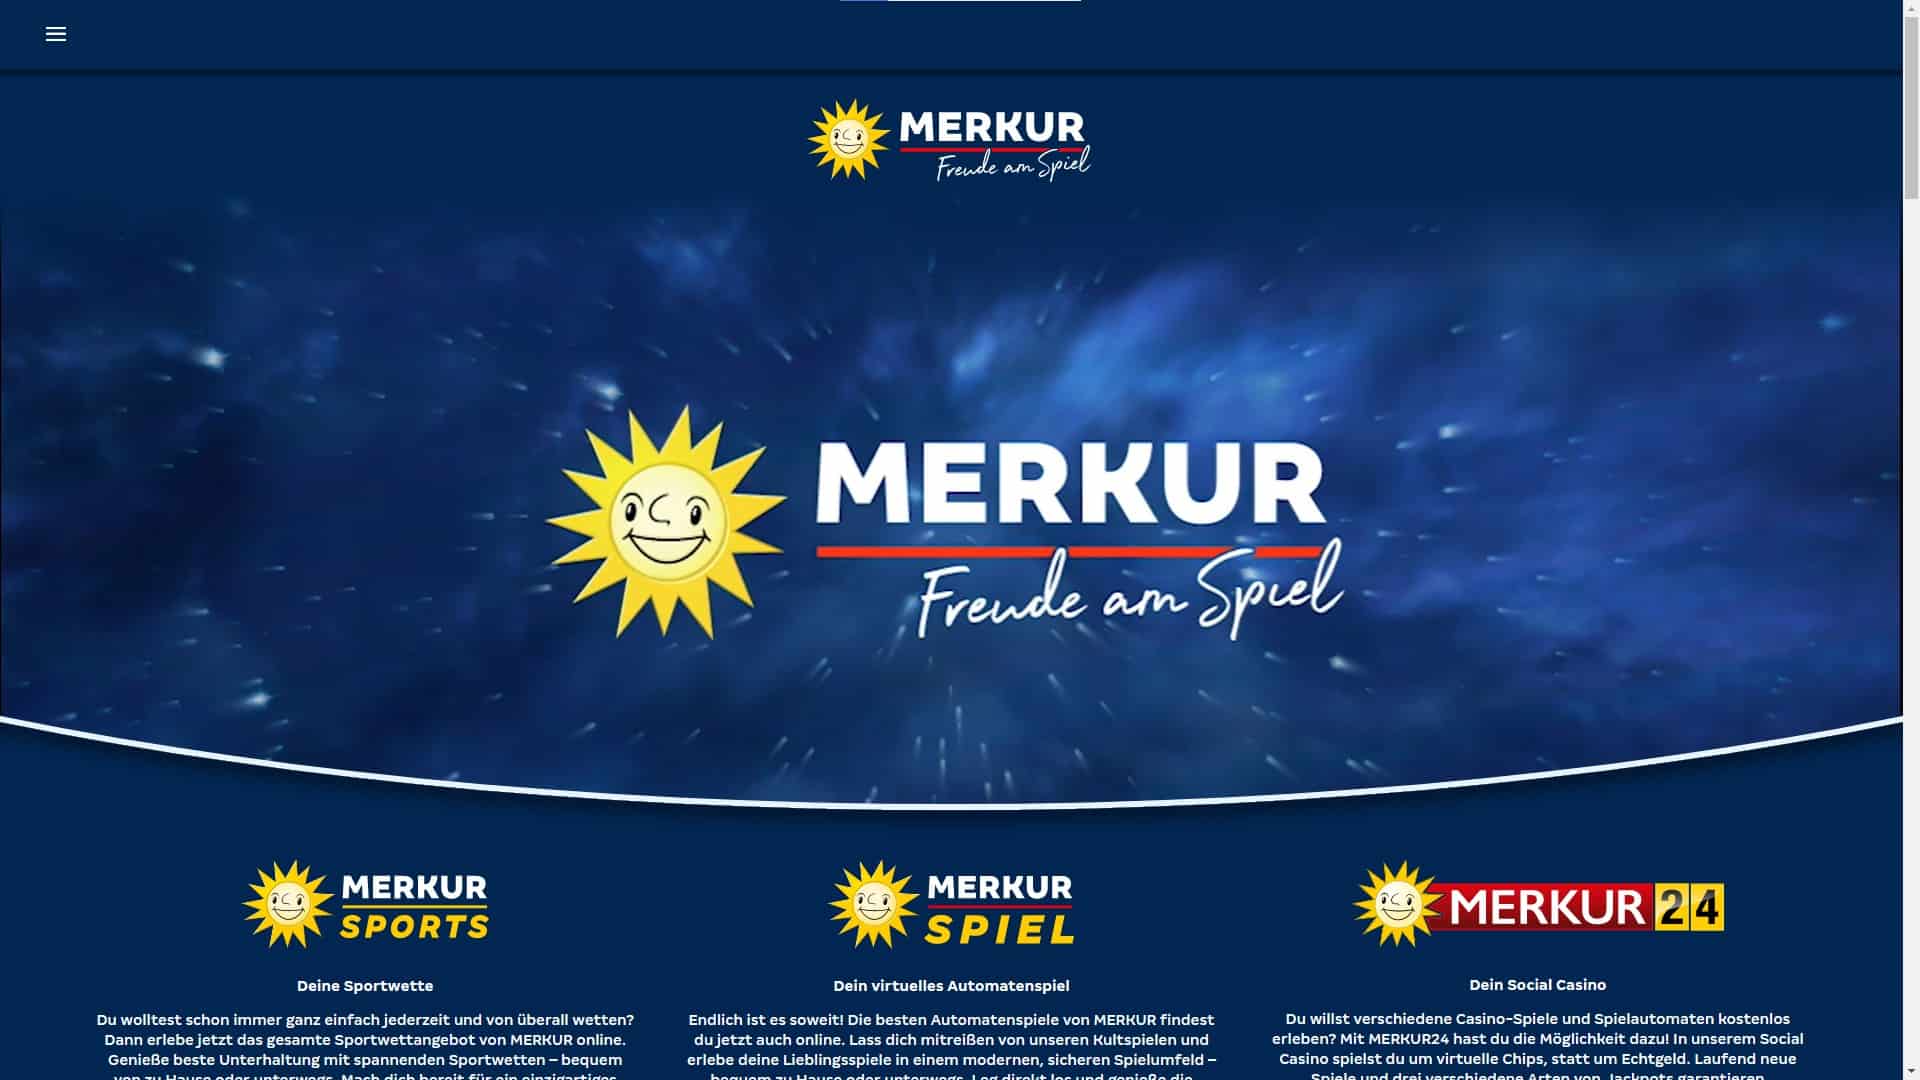 Merkur Spiel